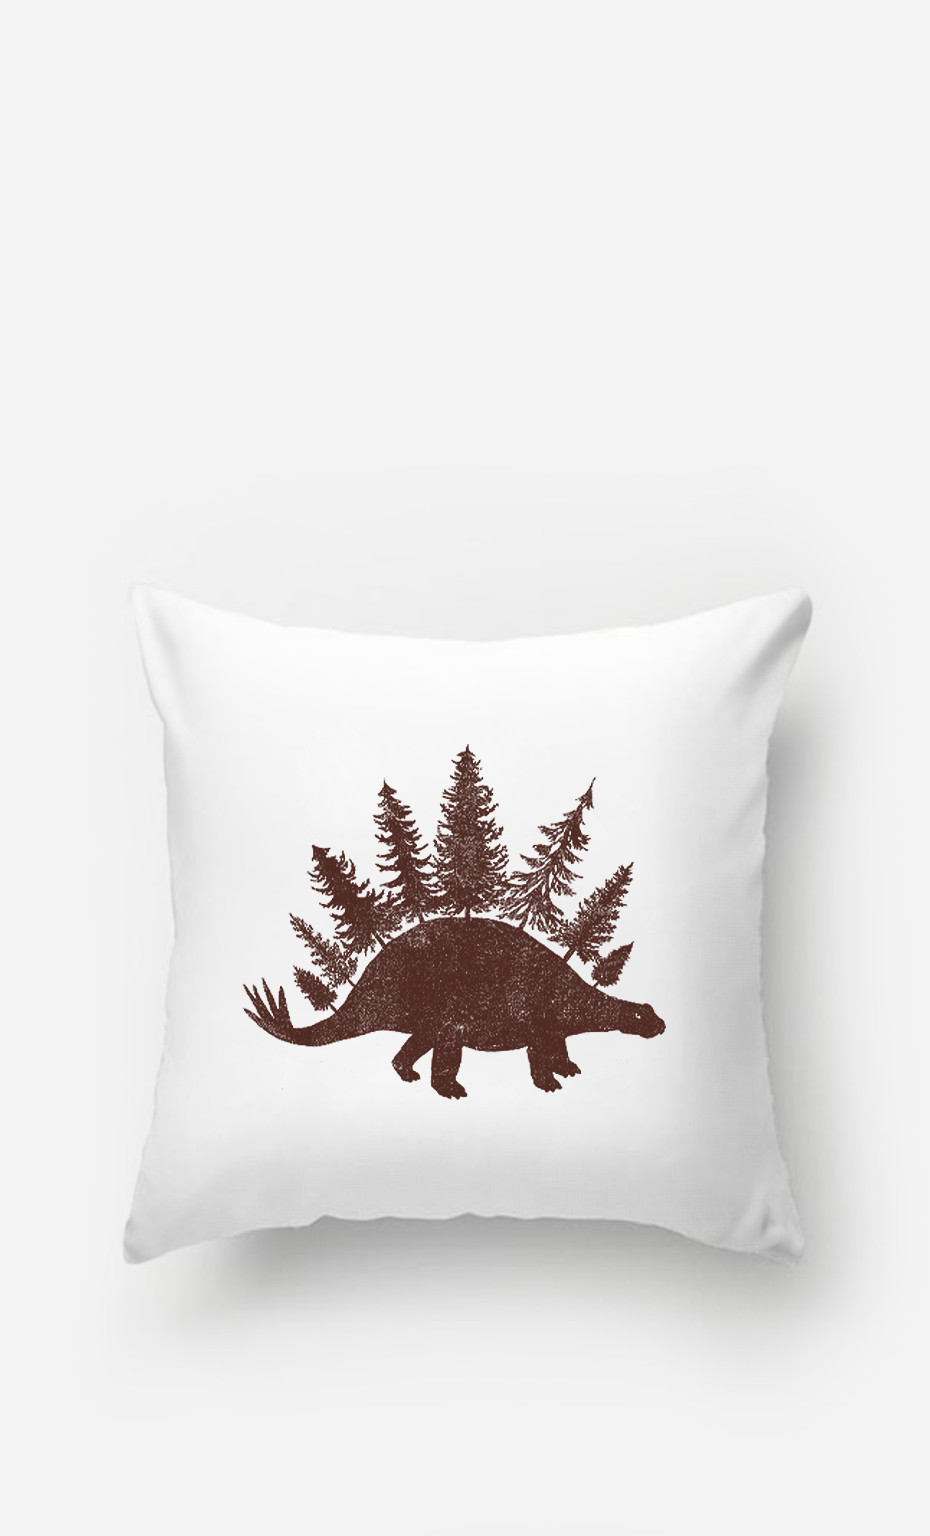 Pillow Stegoforest